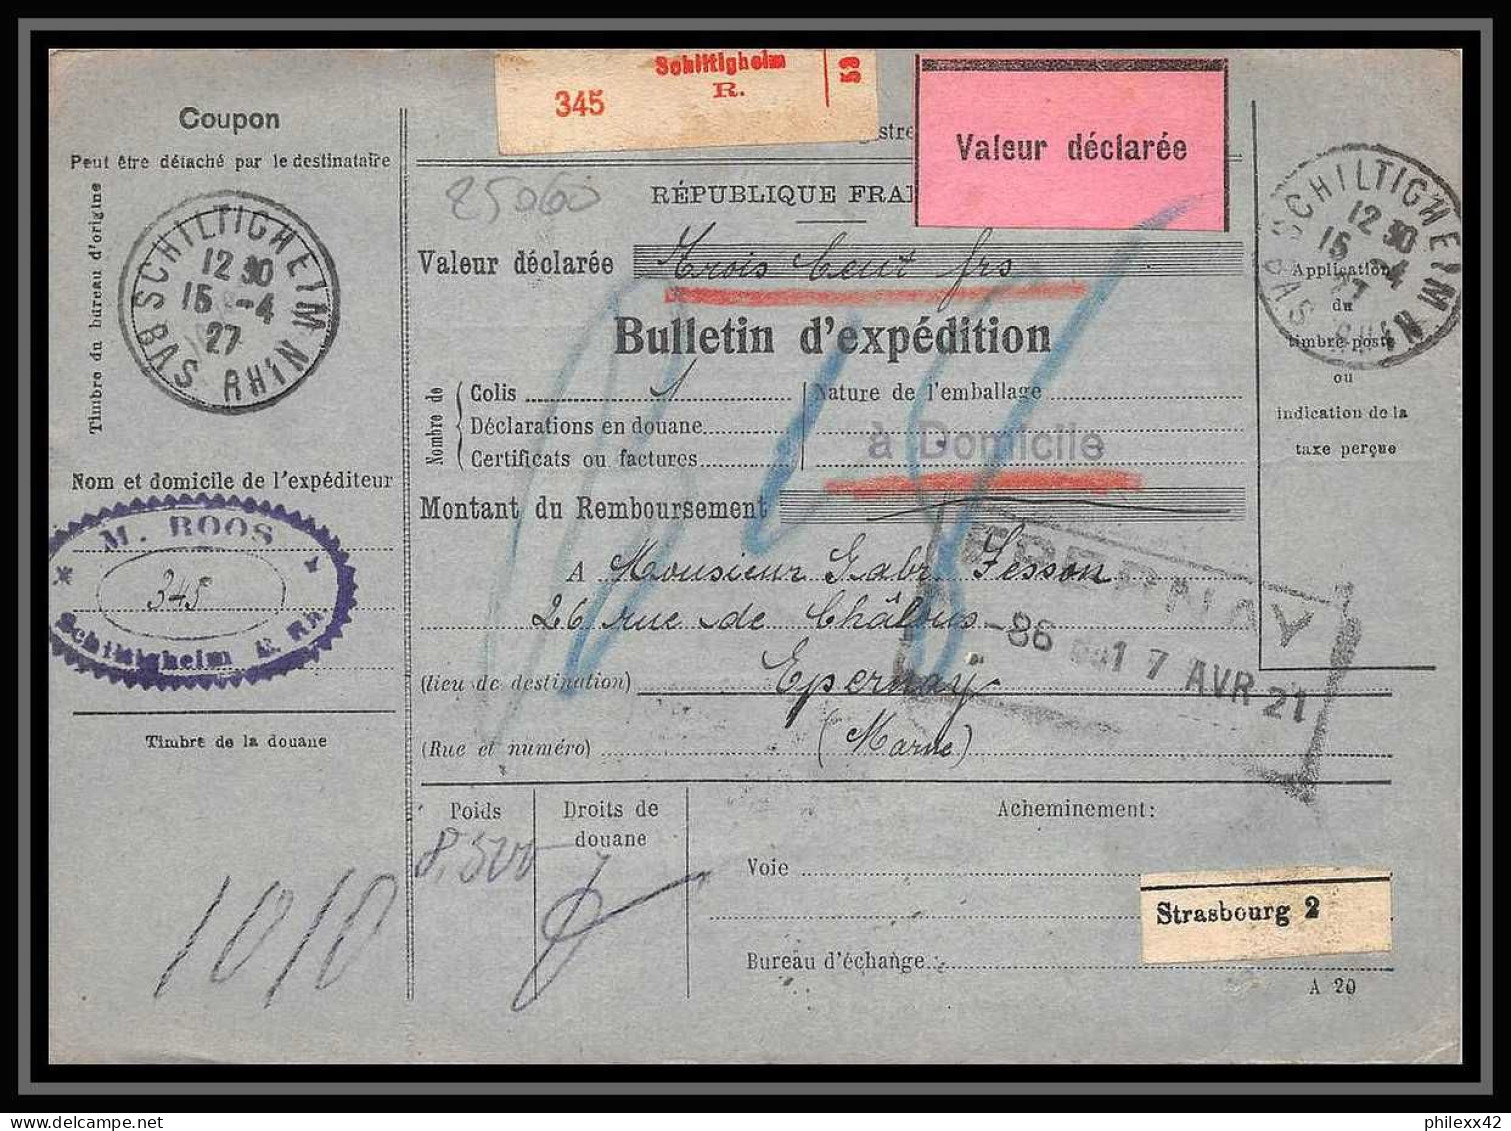 25060 Bulletin D'expédition France Colis Postaux Fiscal Haut Rhin 1927 Schiltigheim Merson 123+145 Valeur Déclarée - Covers & Documents